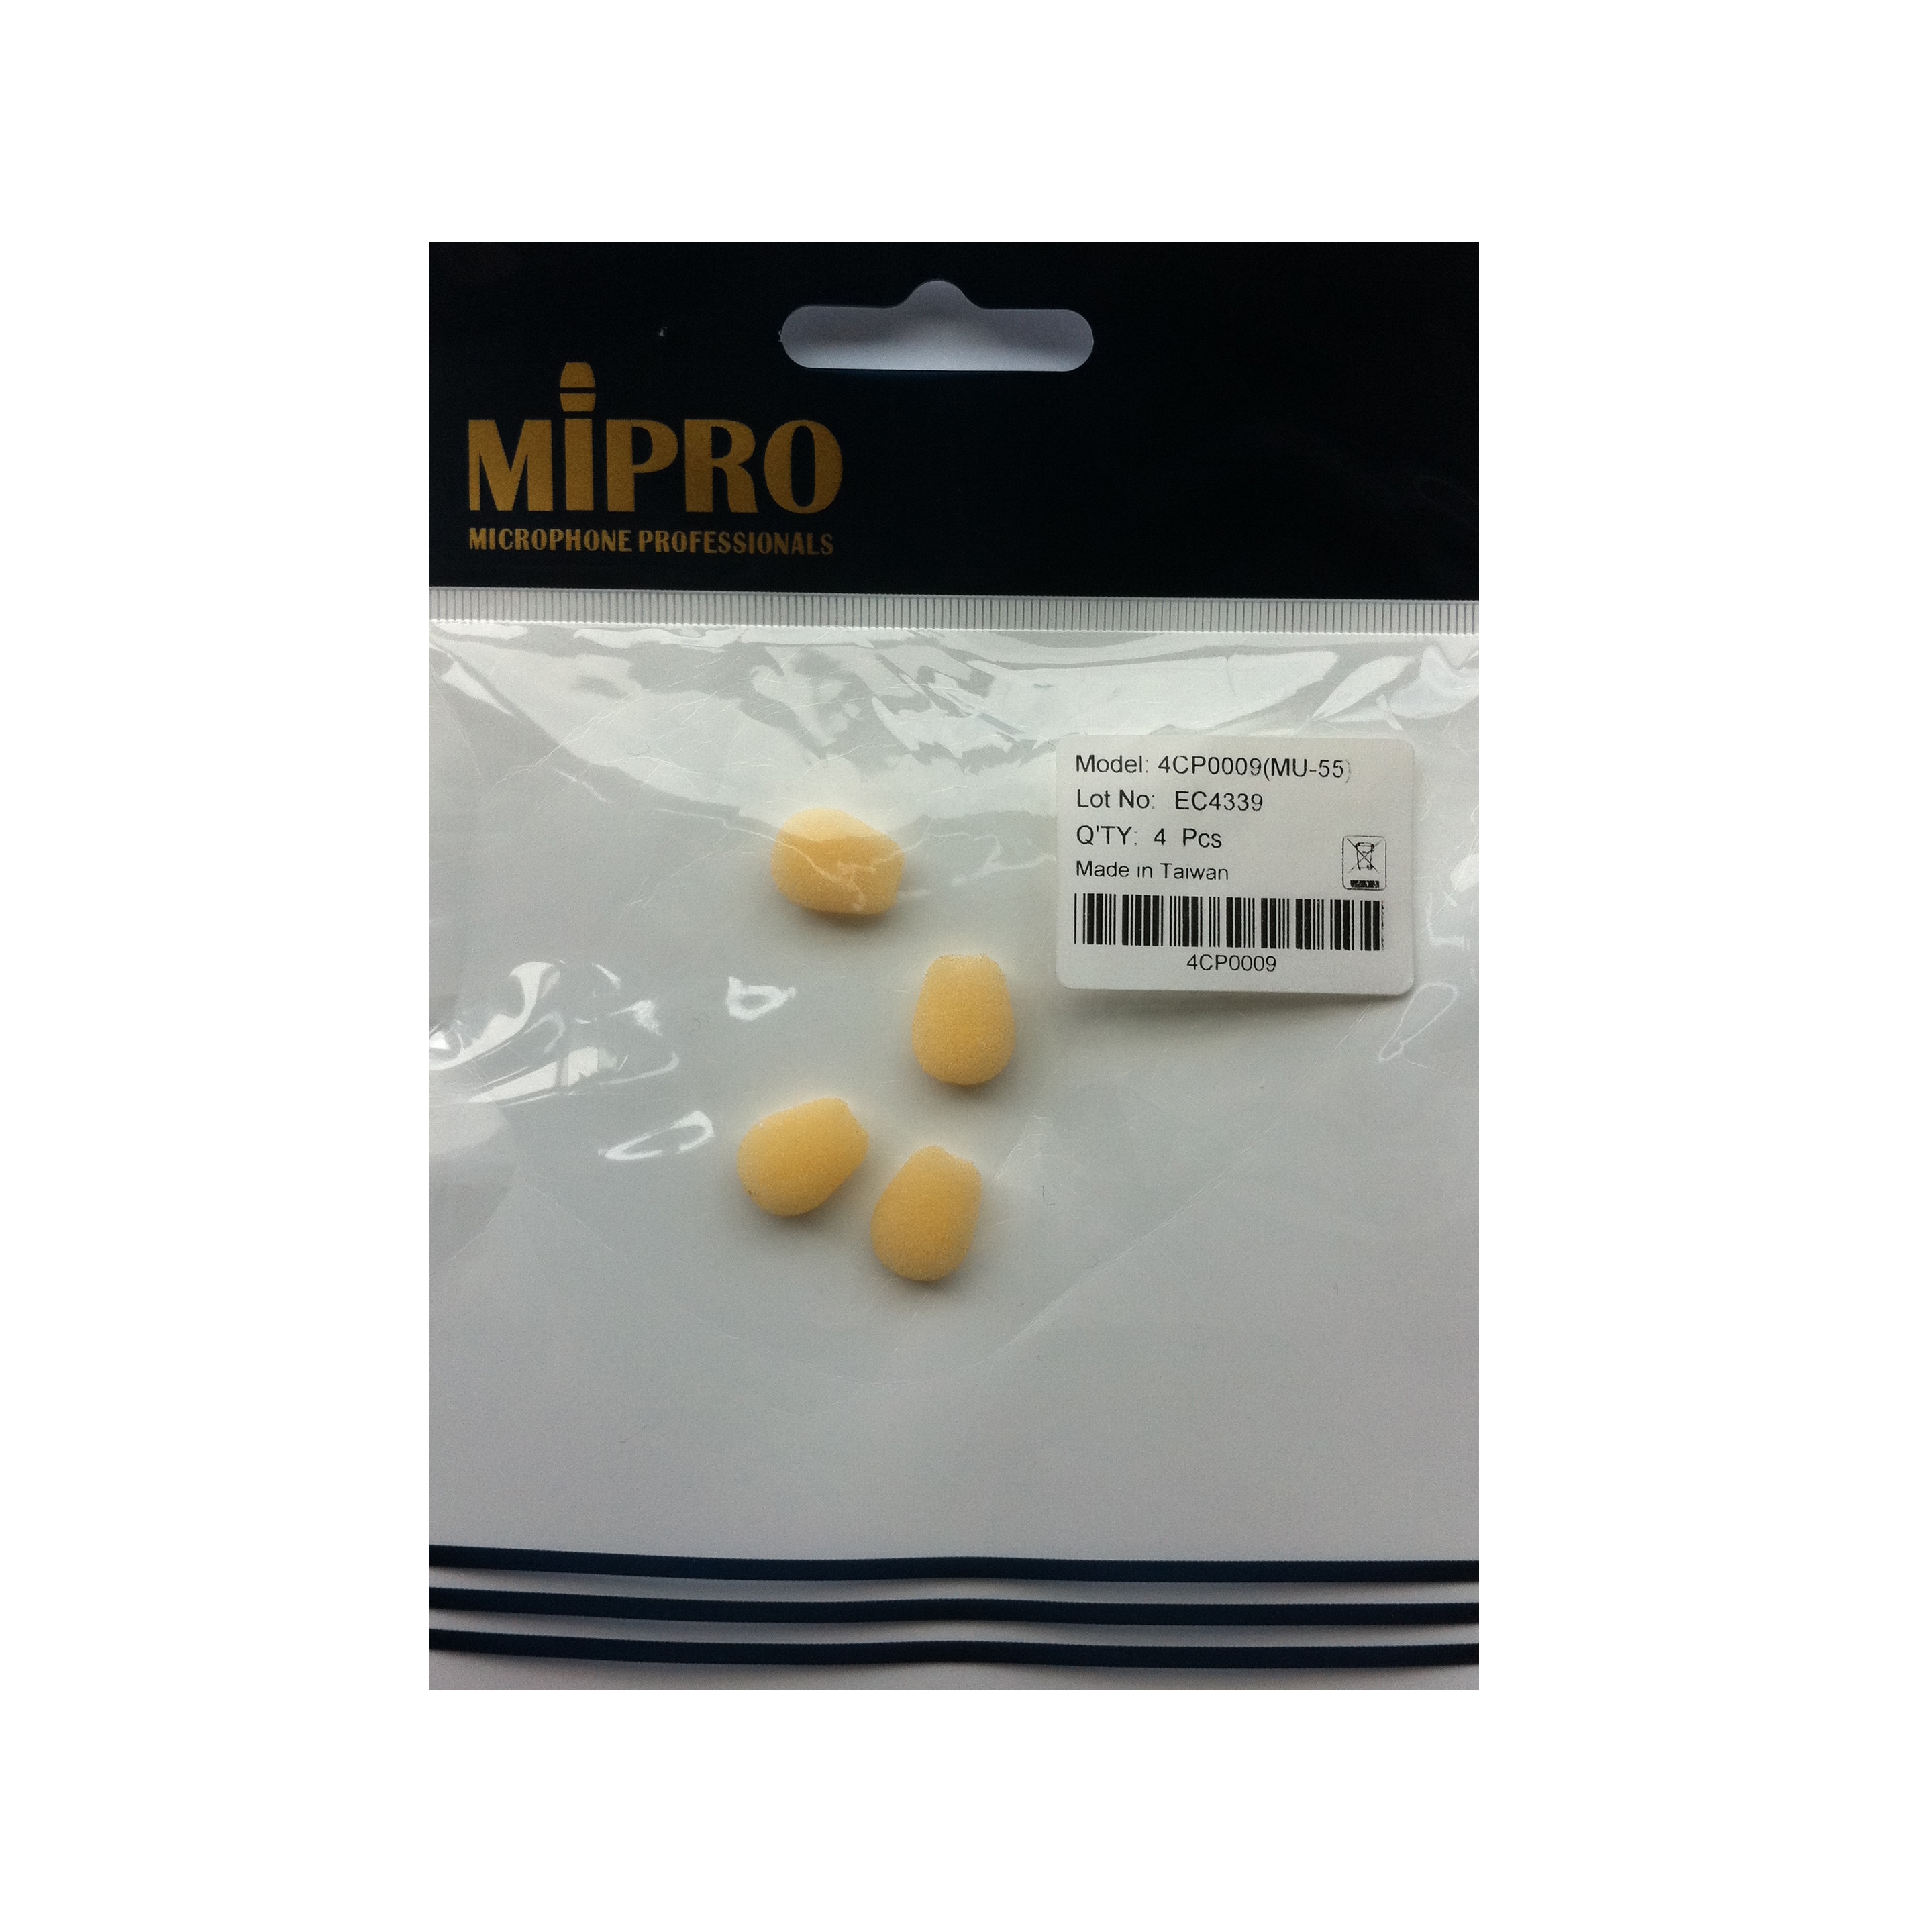 MiPro 4CP0009 Foam Pop Shield for MiPro MU-53L & MU-53H/MH-53HN Headset Microphones (Pack of 4) - Beige